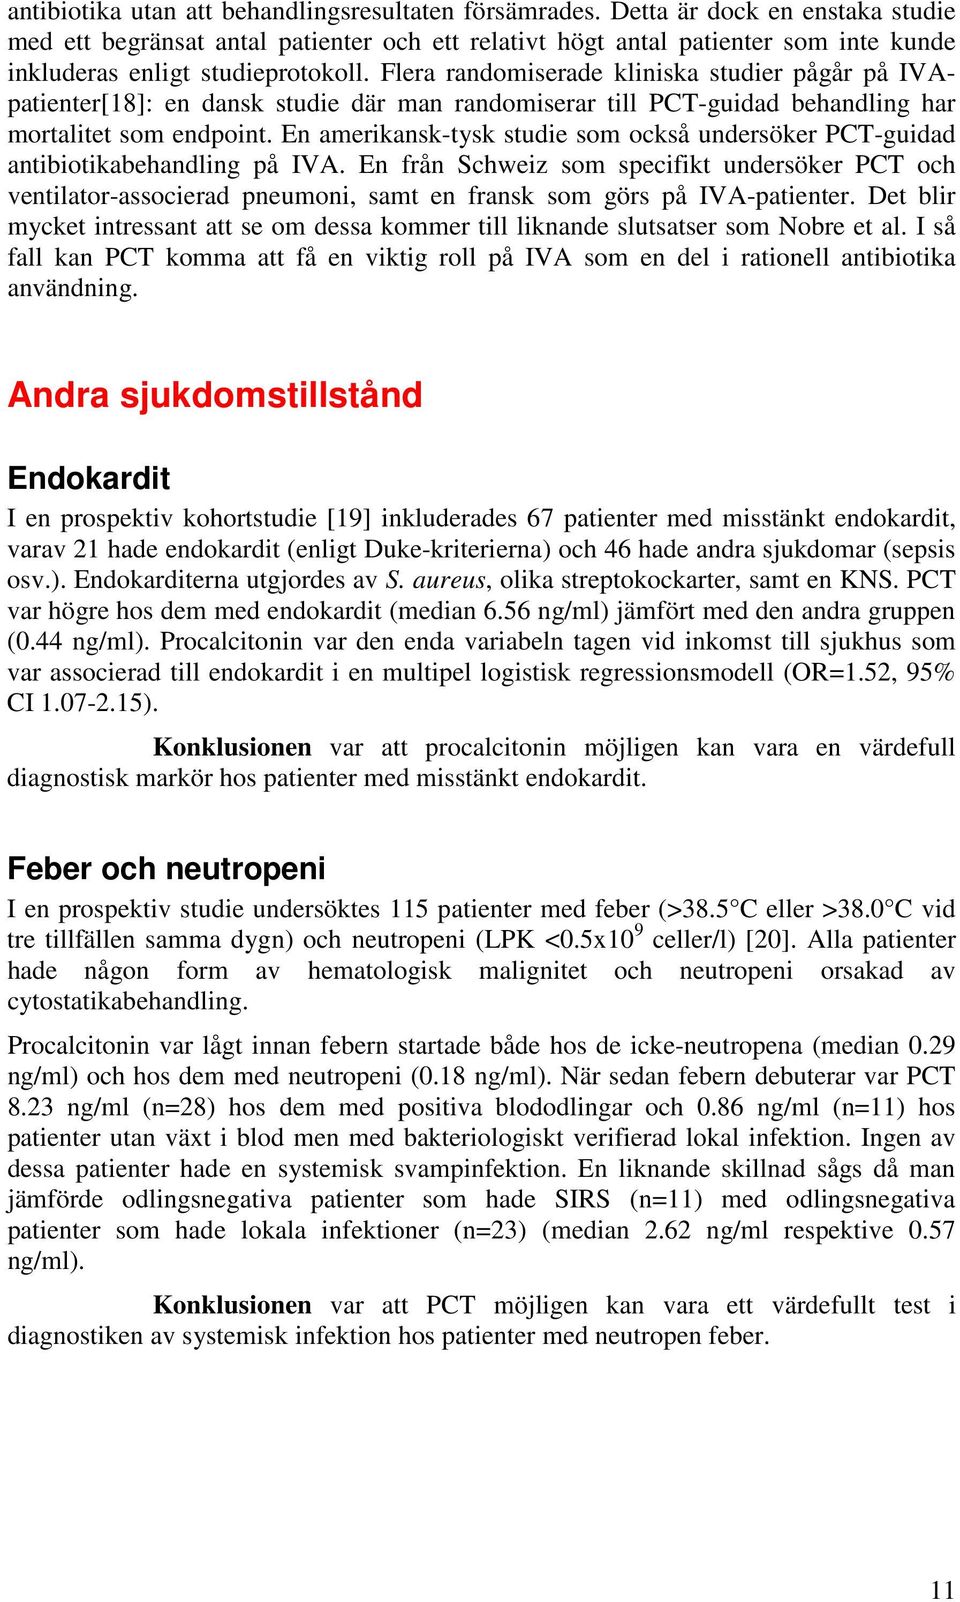 Flera randomiserade kliniska studier pågår på IVApatienter[18]: en dansk studie där man randomiserar till PCT-guidad behandling har mortalitet som endpoint.